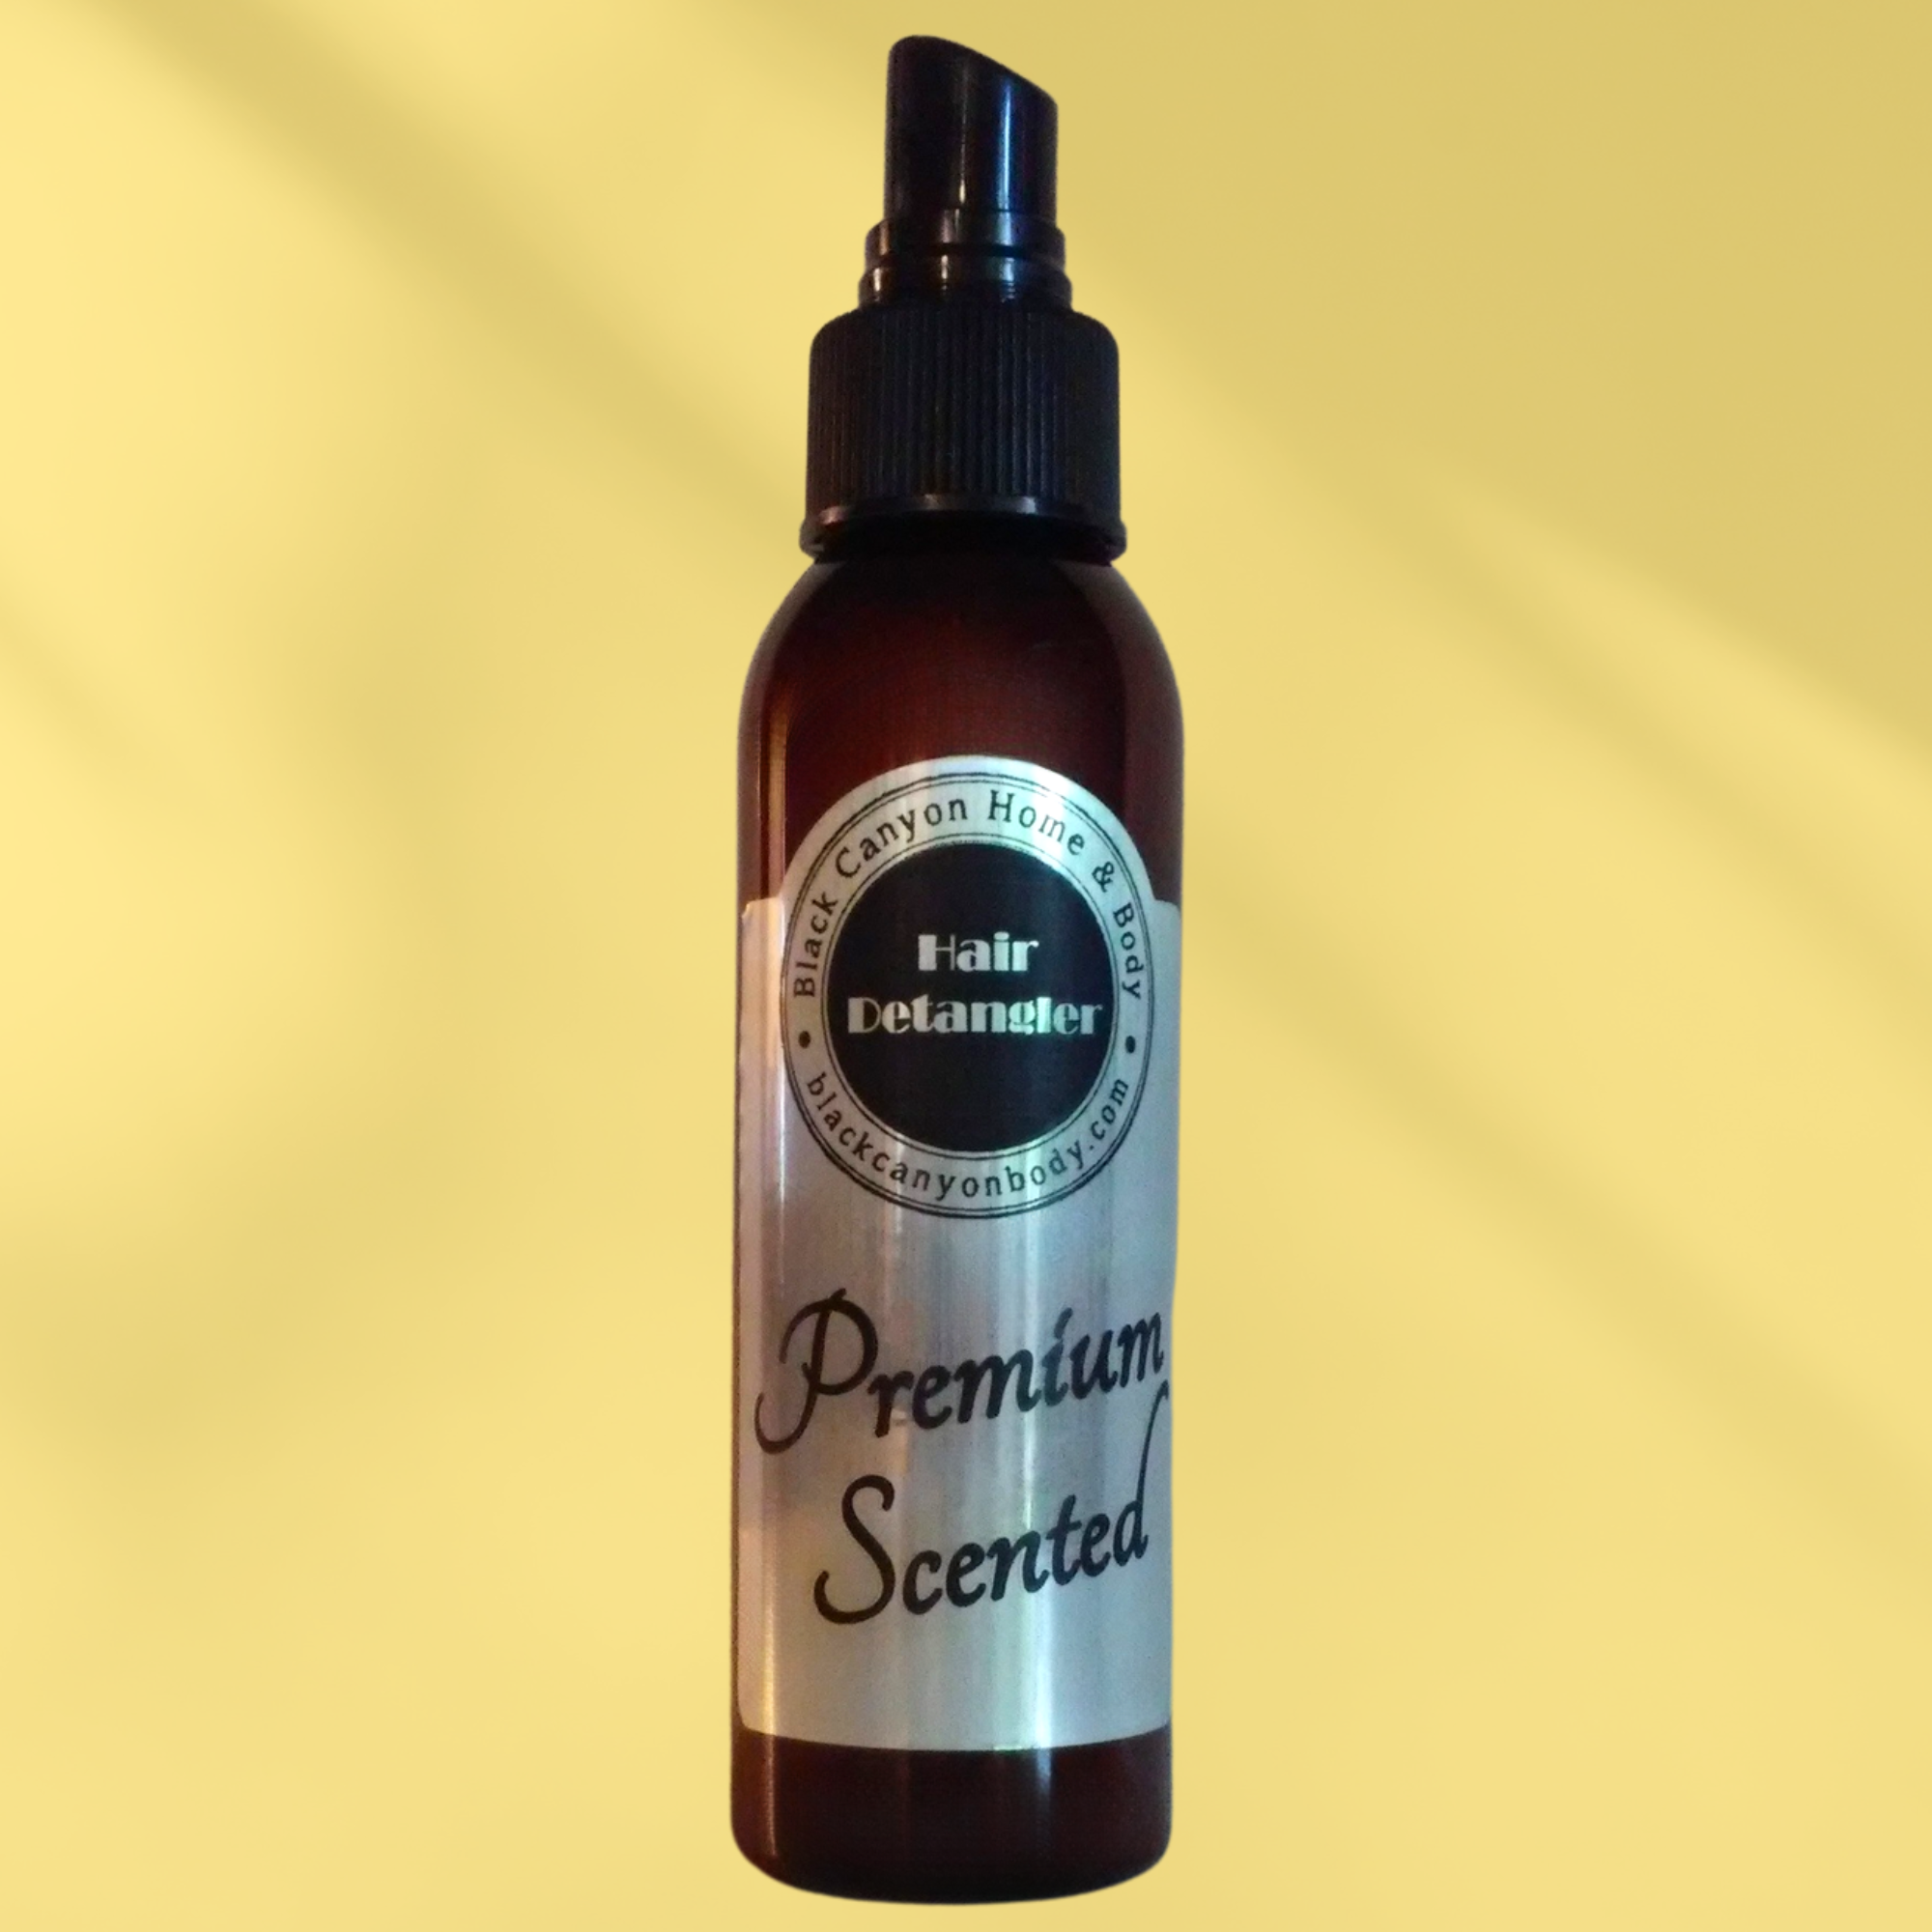 Black Canyon Raspberry Lemonade Scented Hair Detangler Spray with Olive Oil